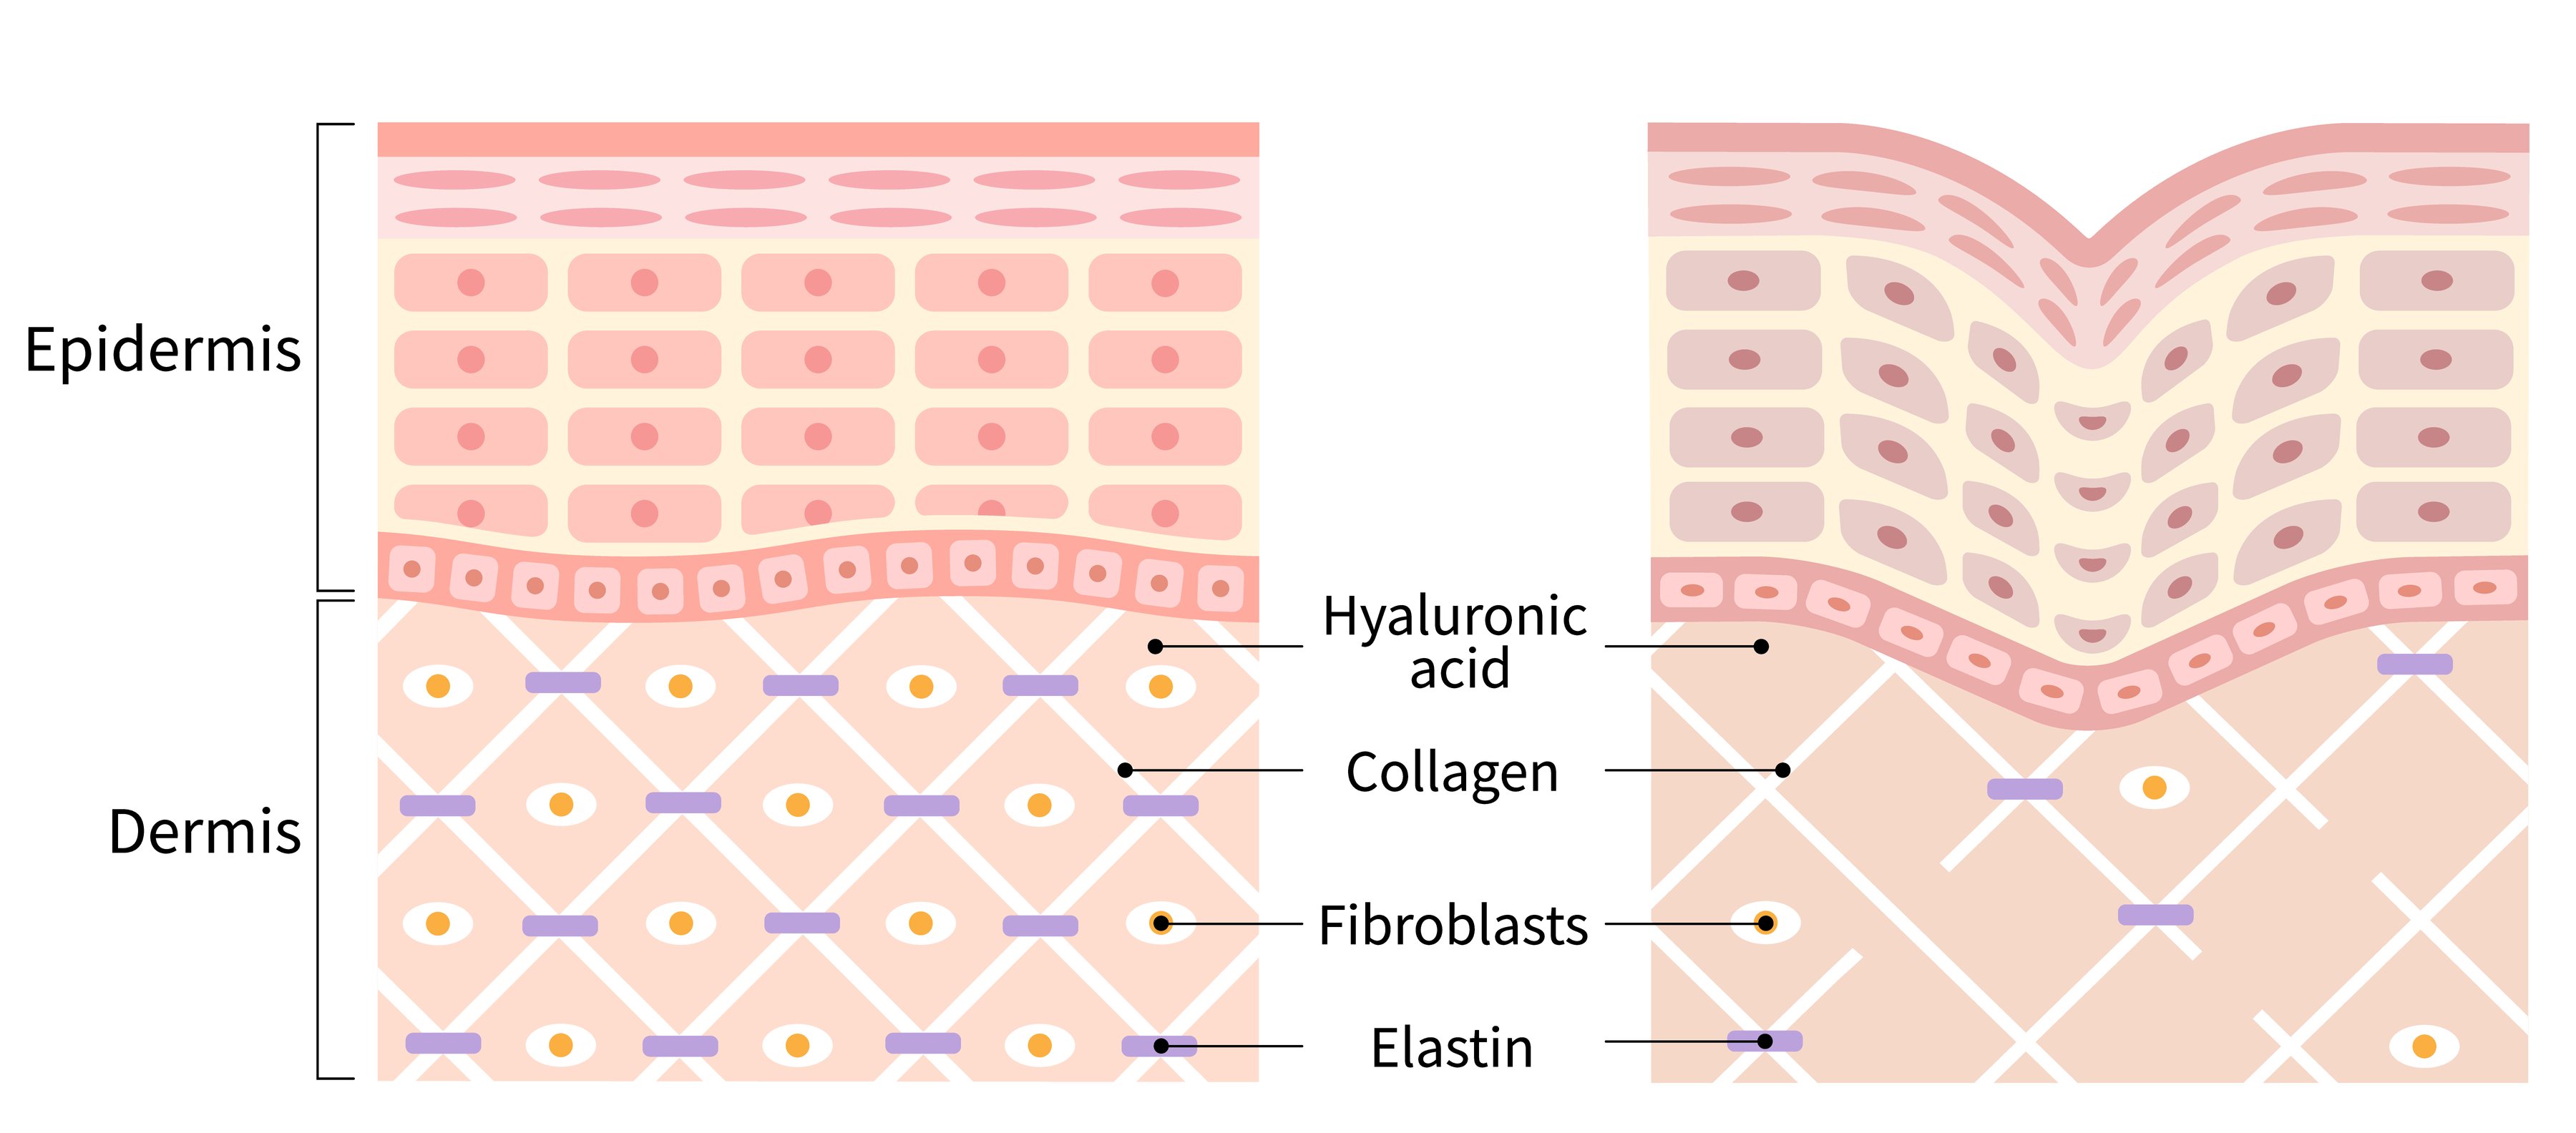 Collagen in Skin